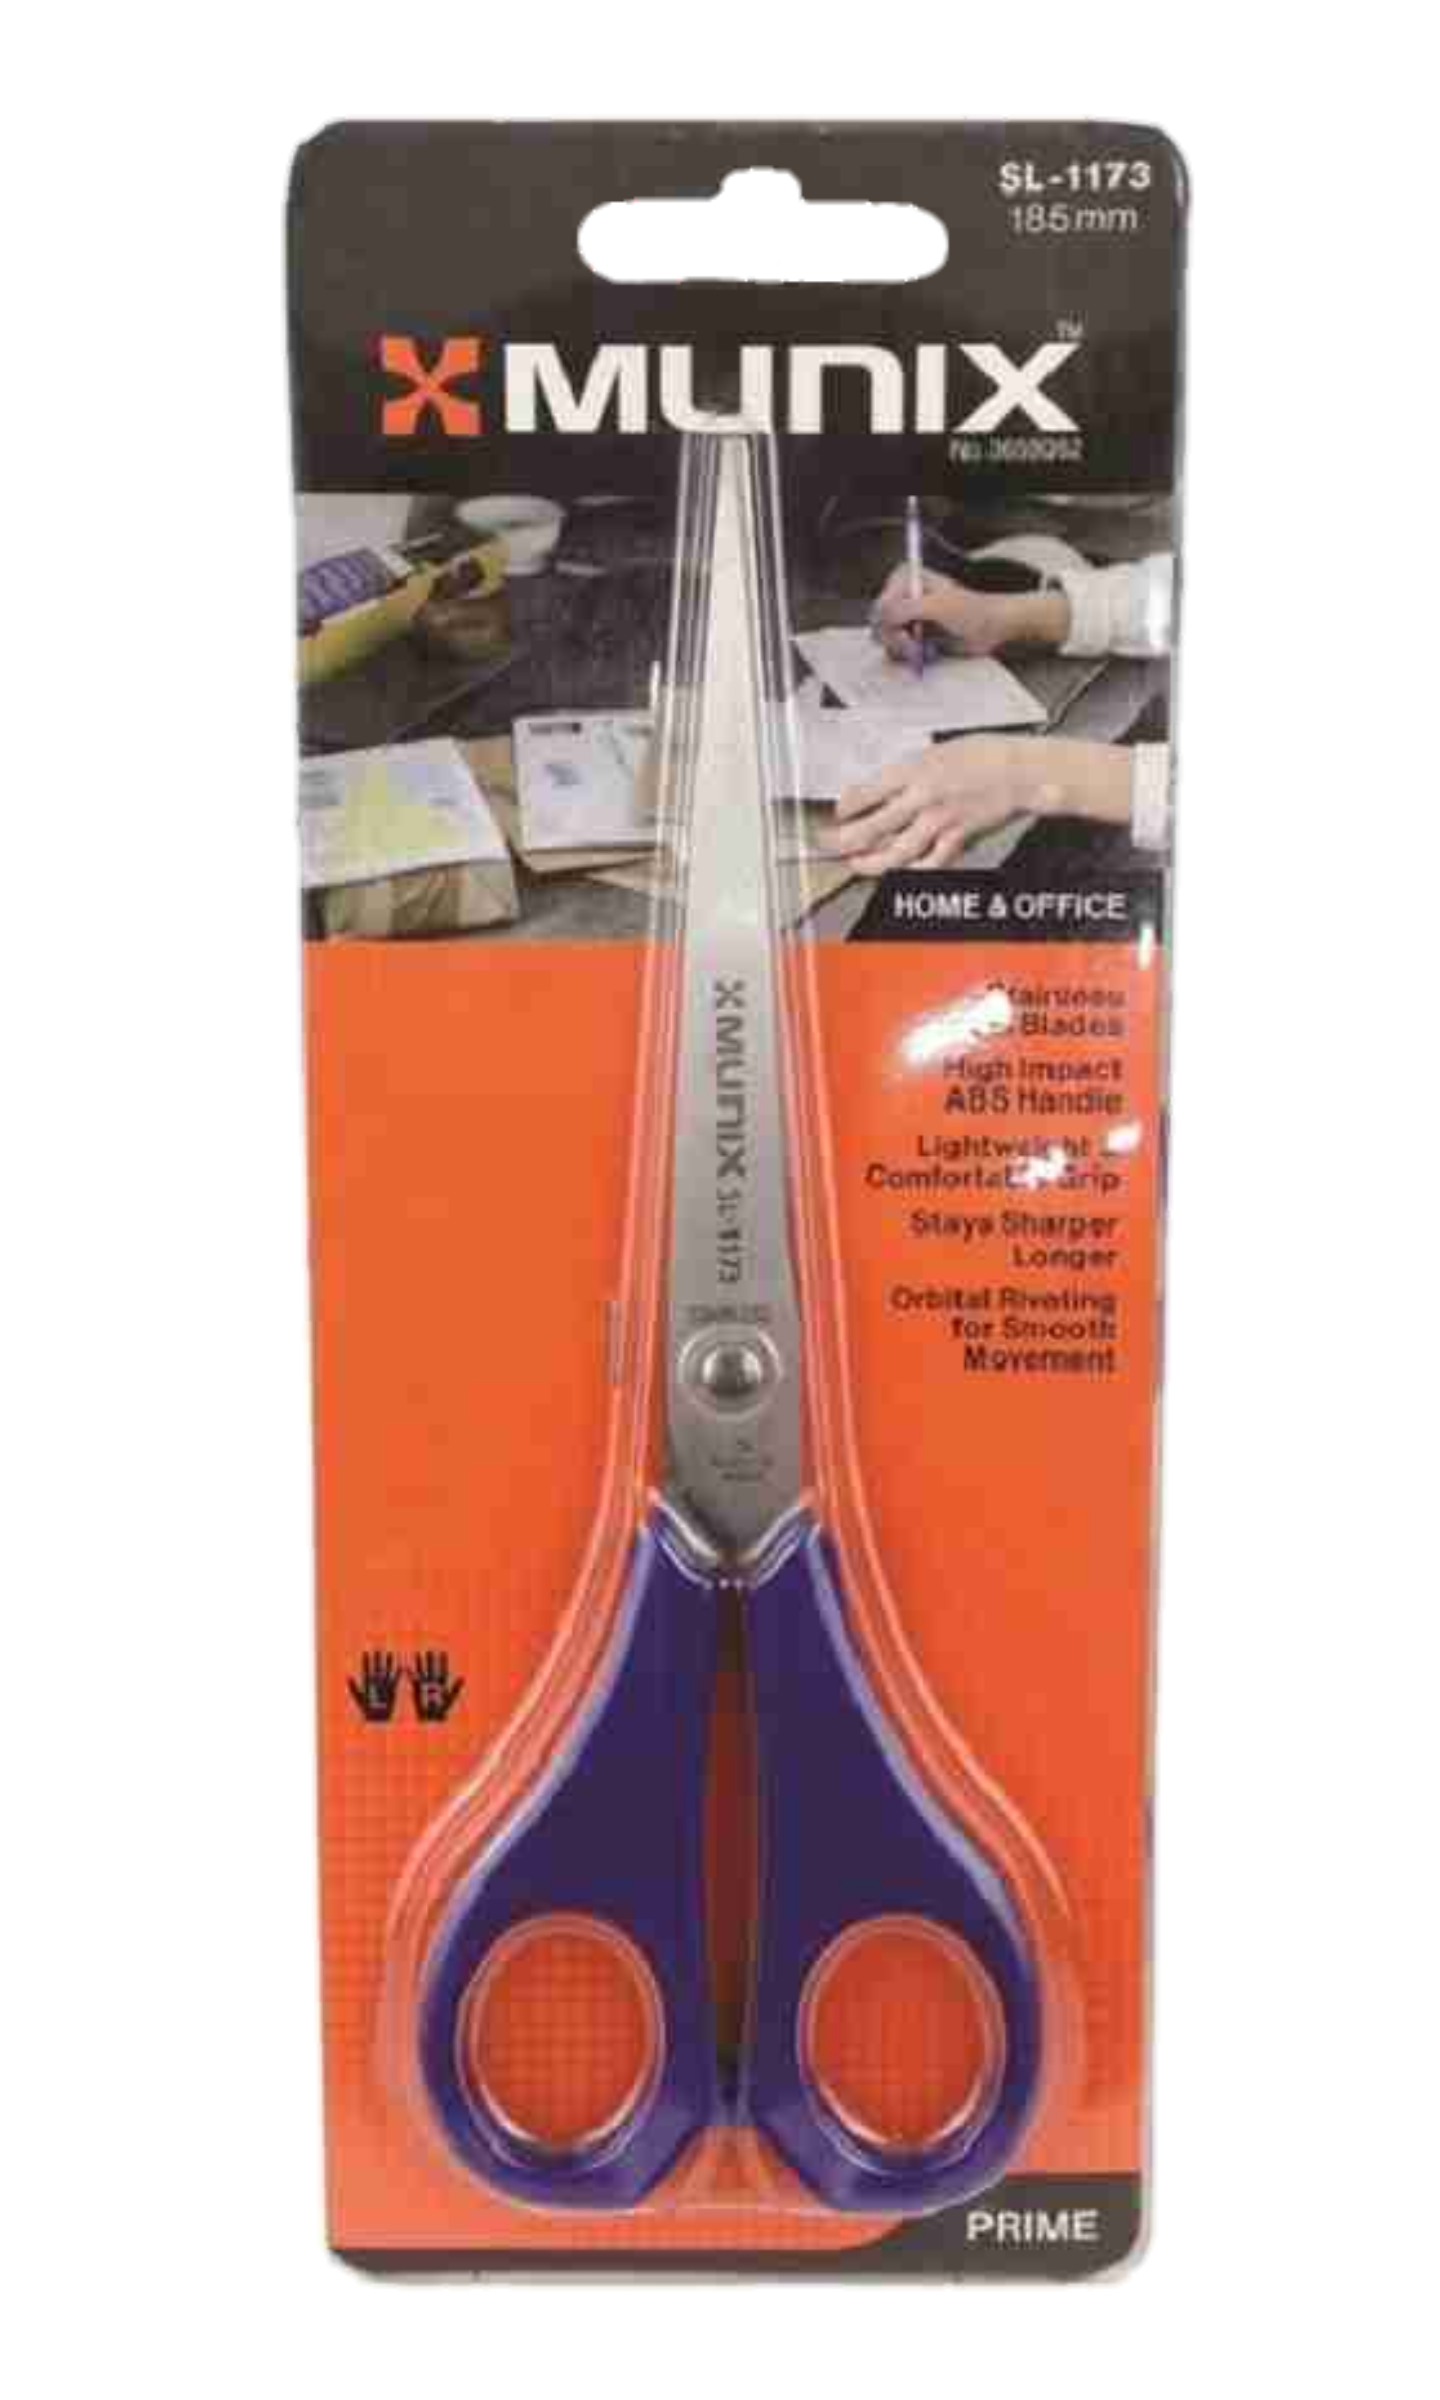 Kangaro Munix Scissors SL- 1173,  185 mm , ( Home & Office ) Pack of 1